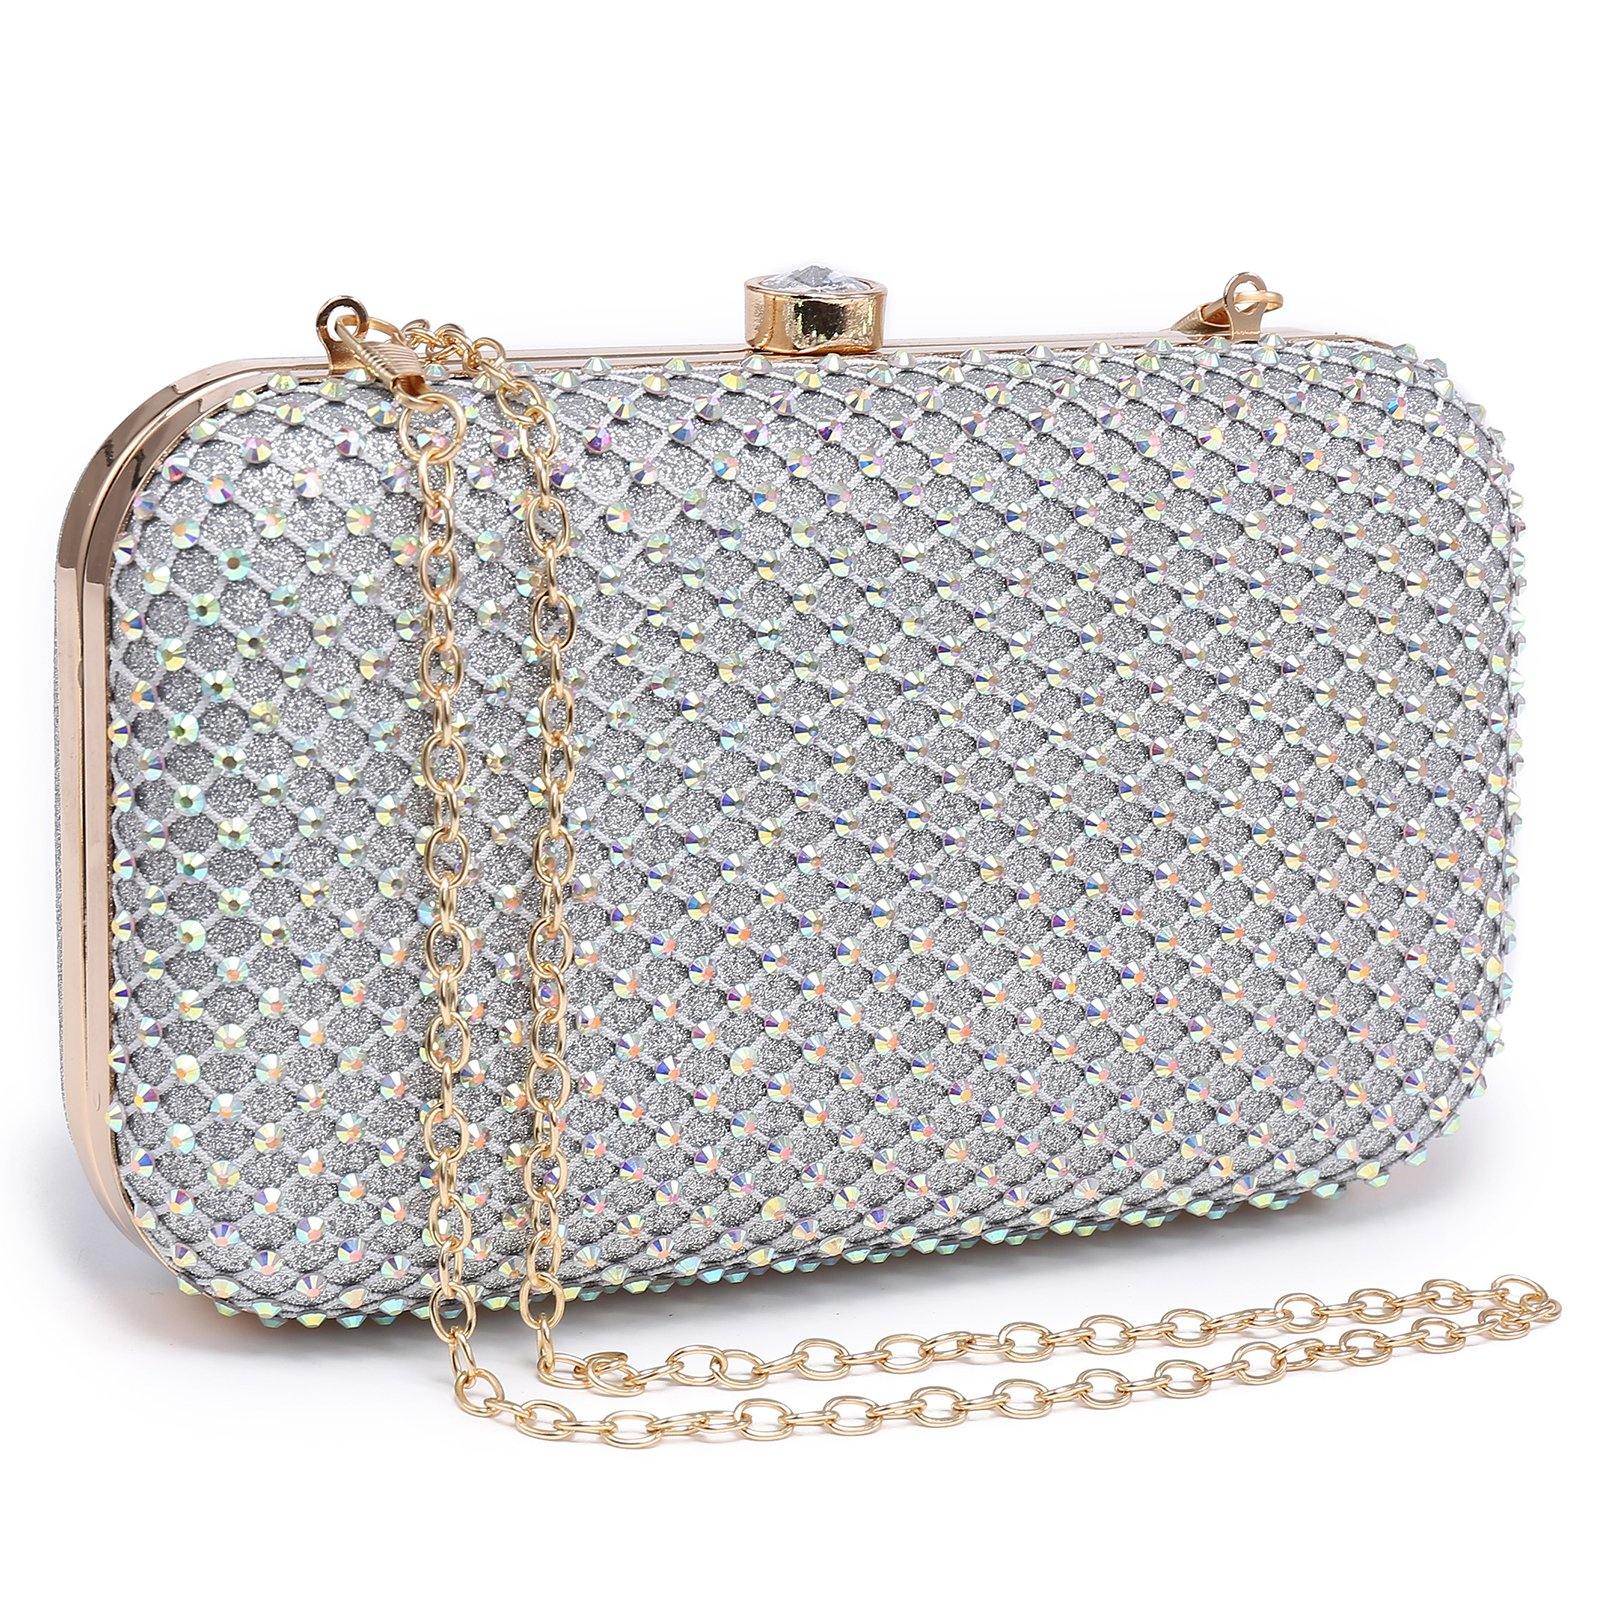 Rhinestone Clutch Bag Crystal Clutch Purse Evening Bags Handbag